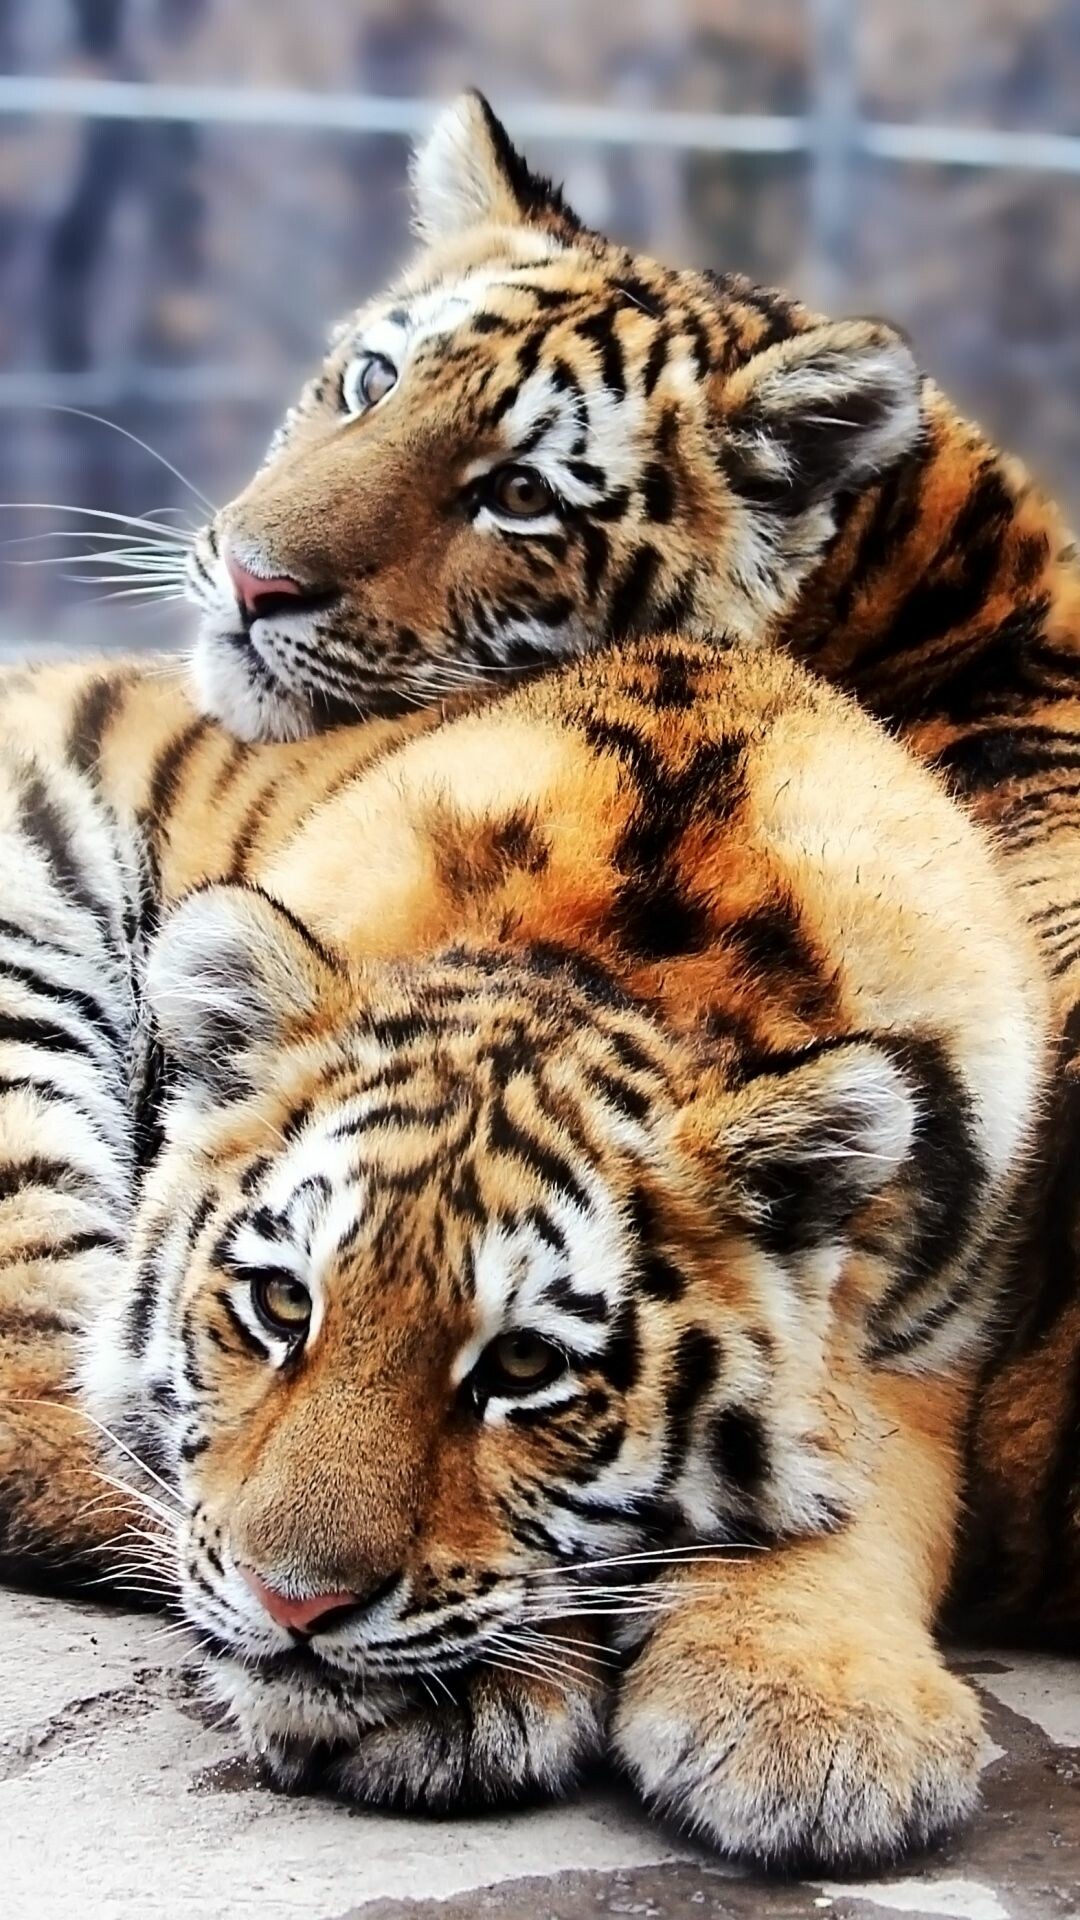 Tiger Cub: Predators, Animals wild, Big cats babies, Beautiful striped cats. 1080x1920 Full HD Background.